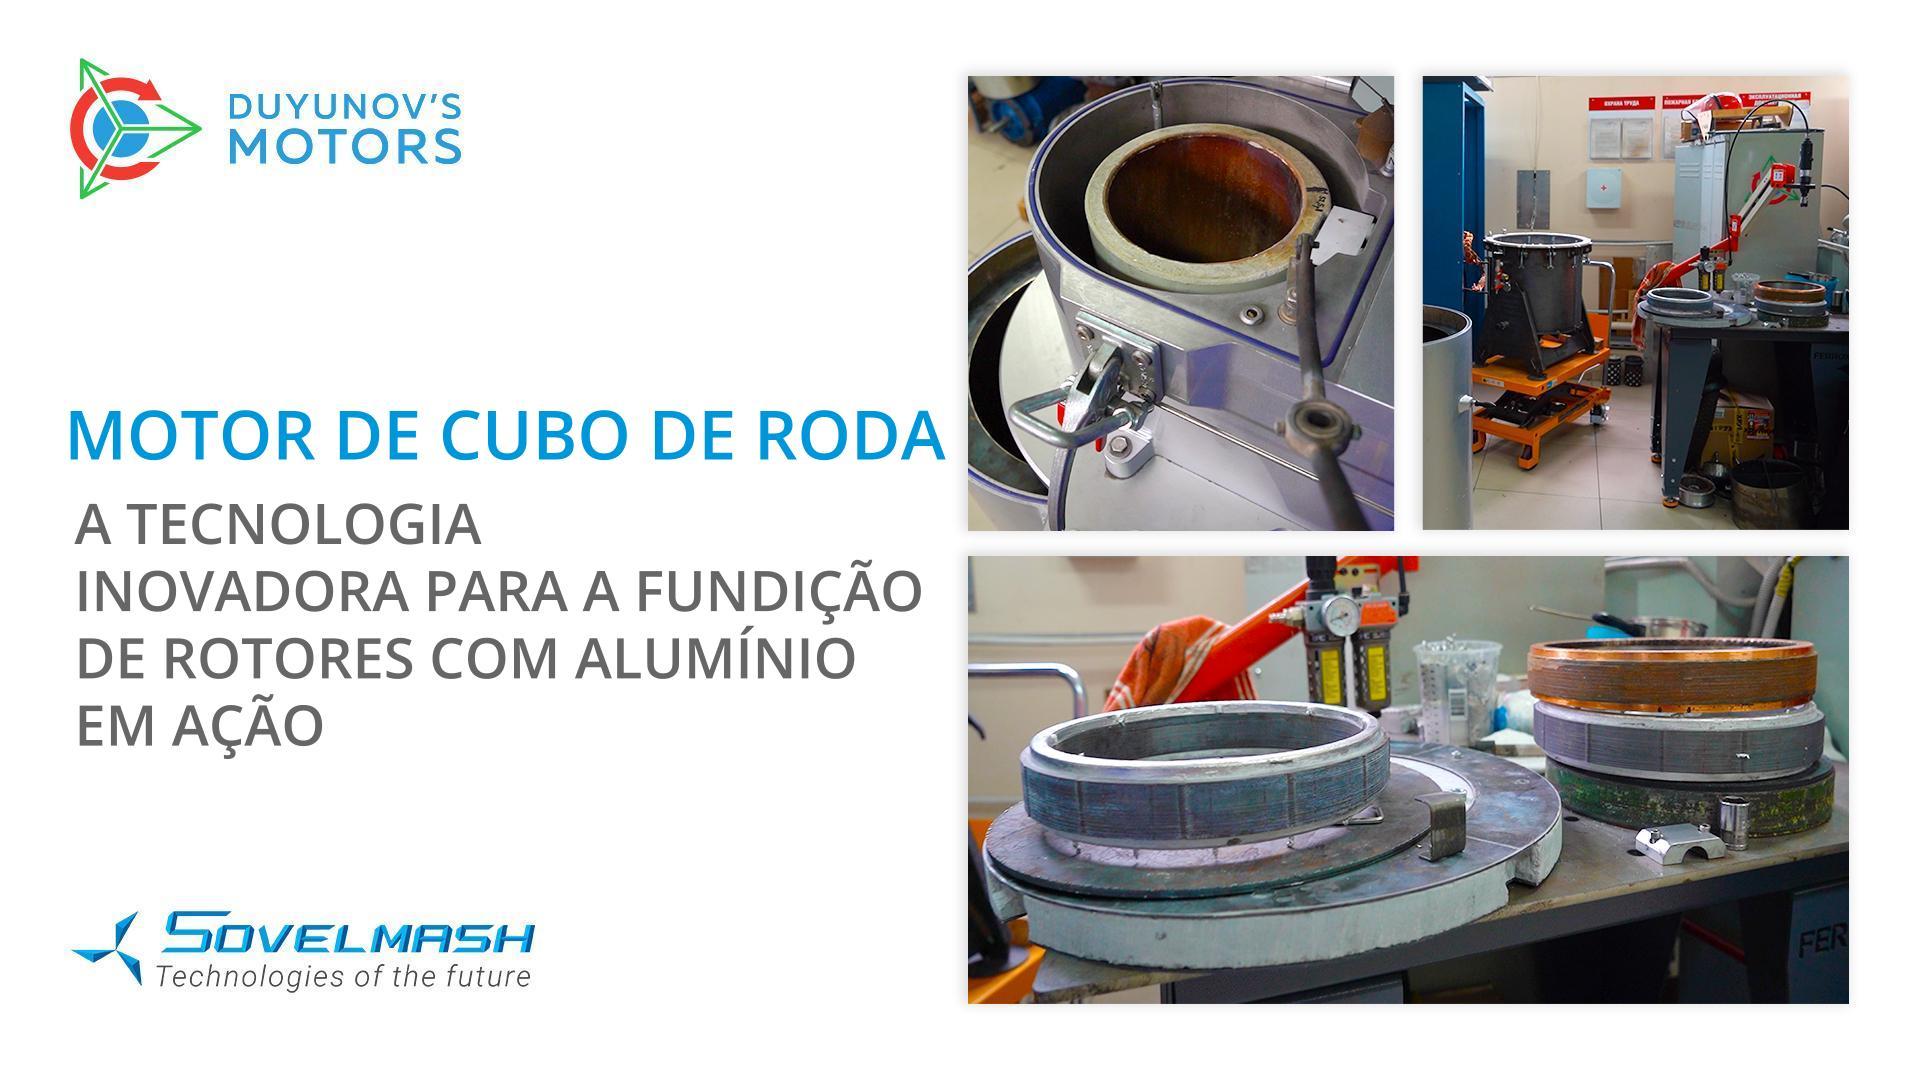 Motor de cubo de roda: a tecnologia inovadora para a fundição de rotores com alumínio em ação